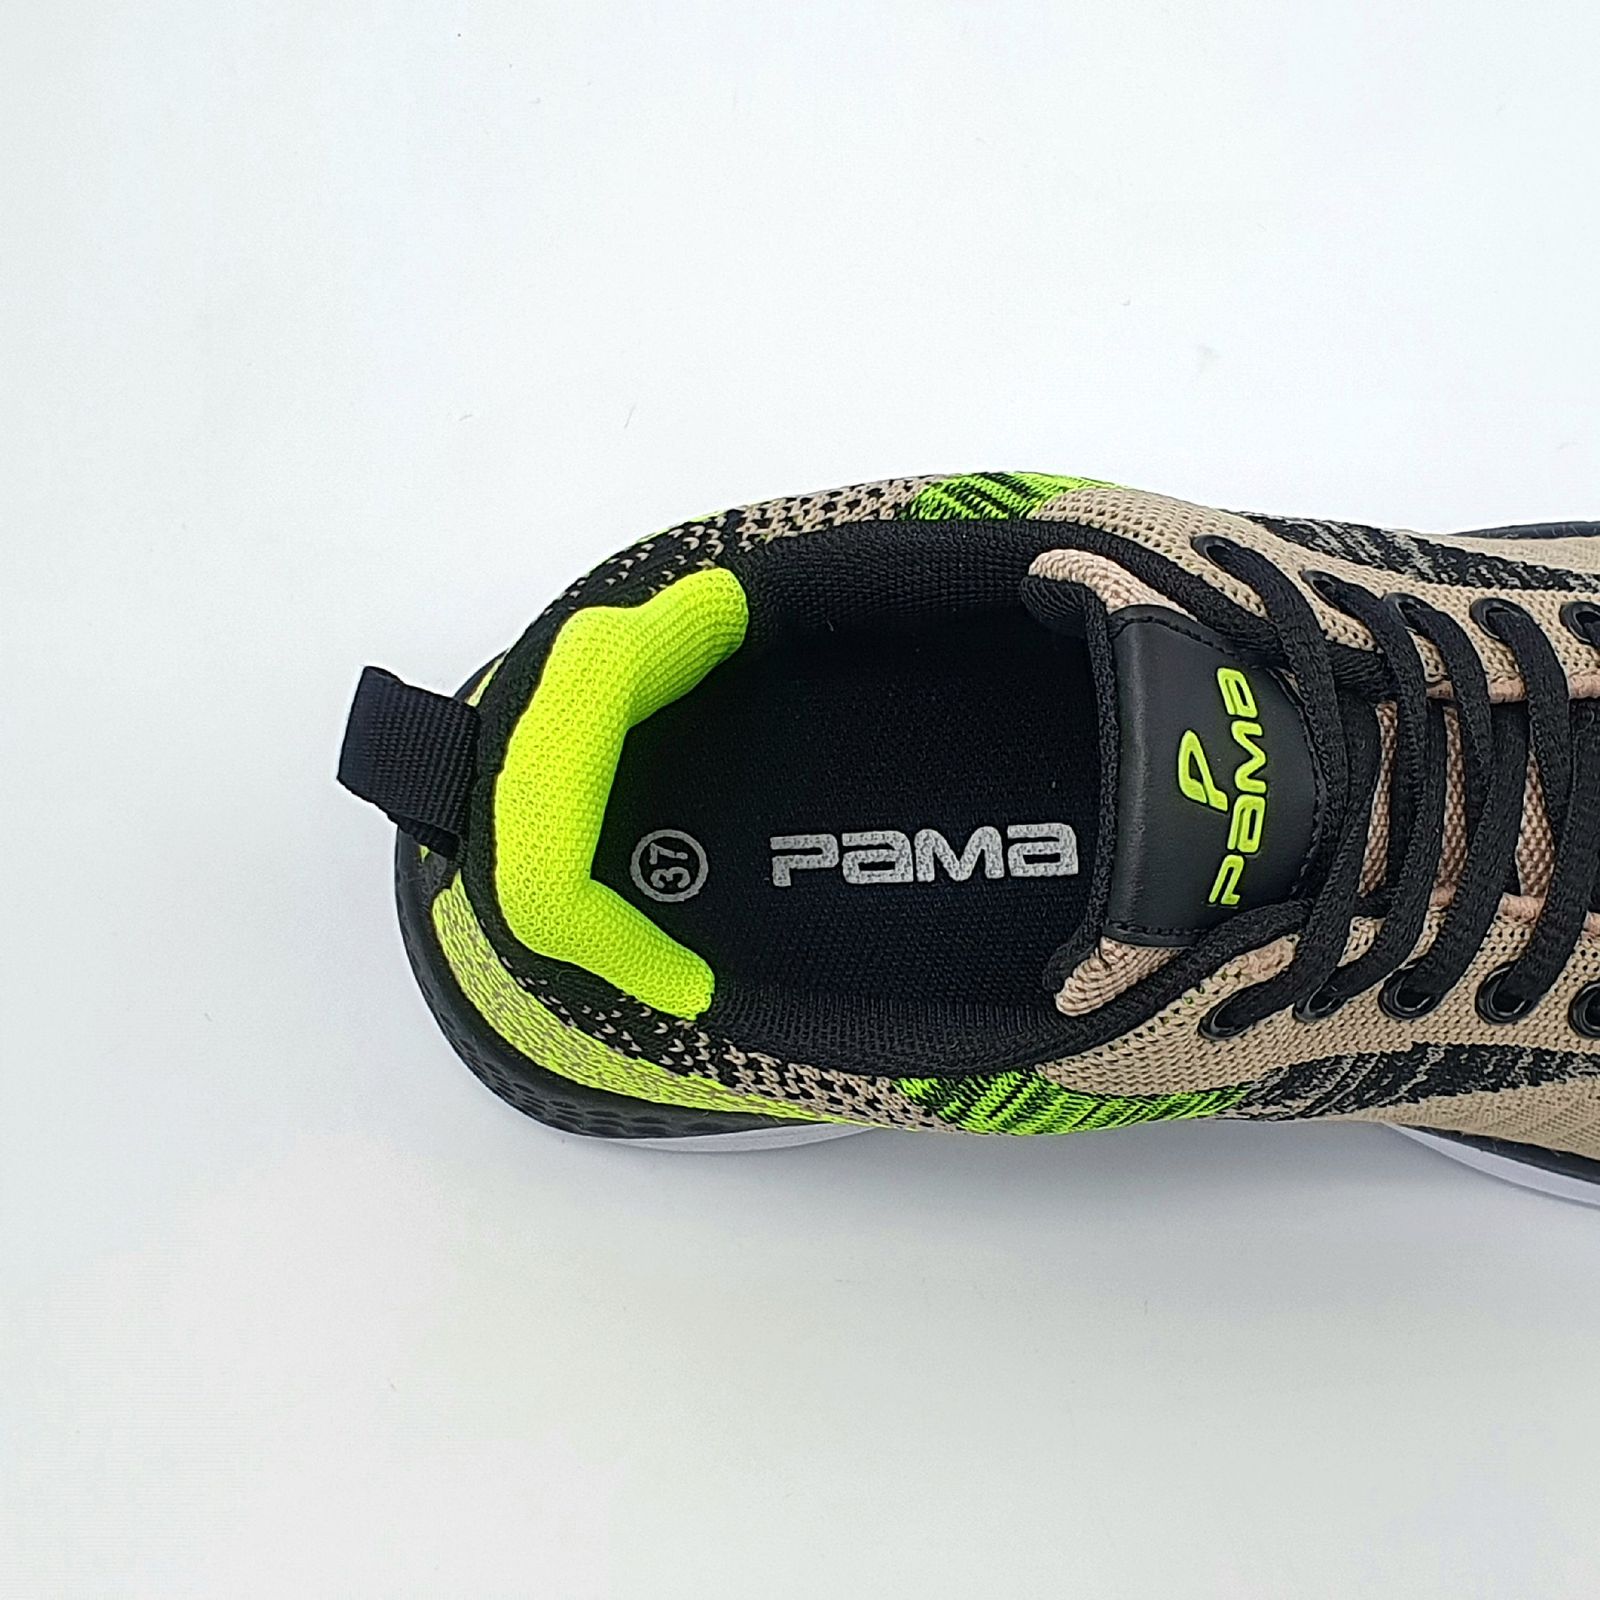 کفش پیاده روی زنانه پاما مدل VR-828 کد G1617 -  - 3